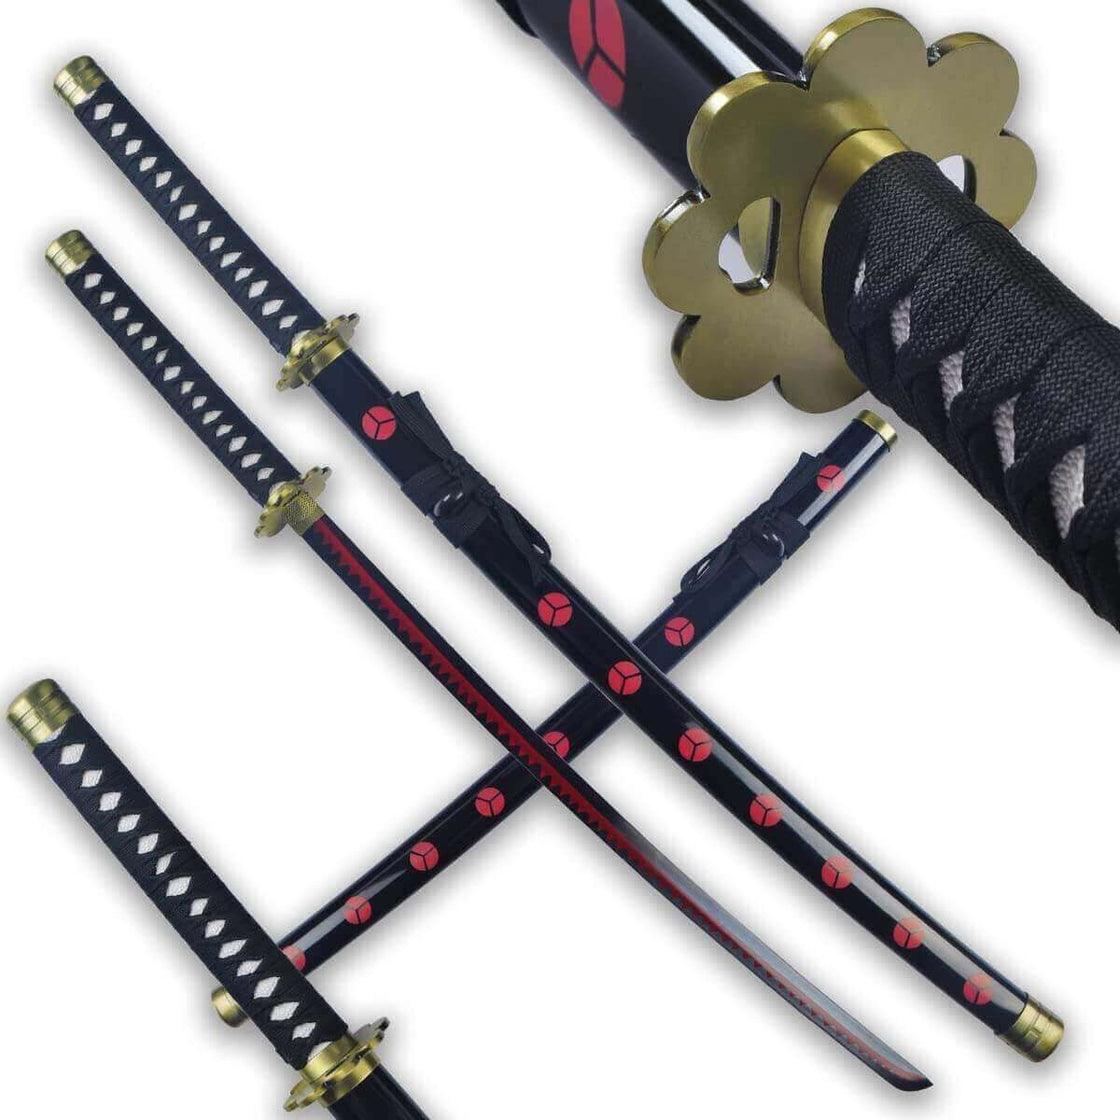 Buy Anime Swordkiller Seven Swordjapanese Samurai Swordreal Online in India   Etsy